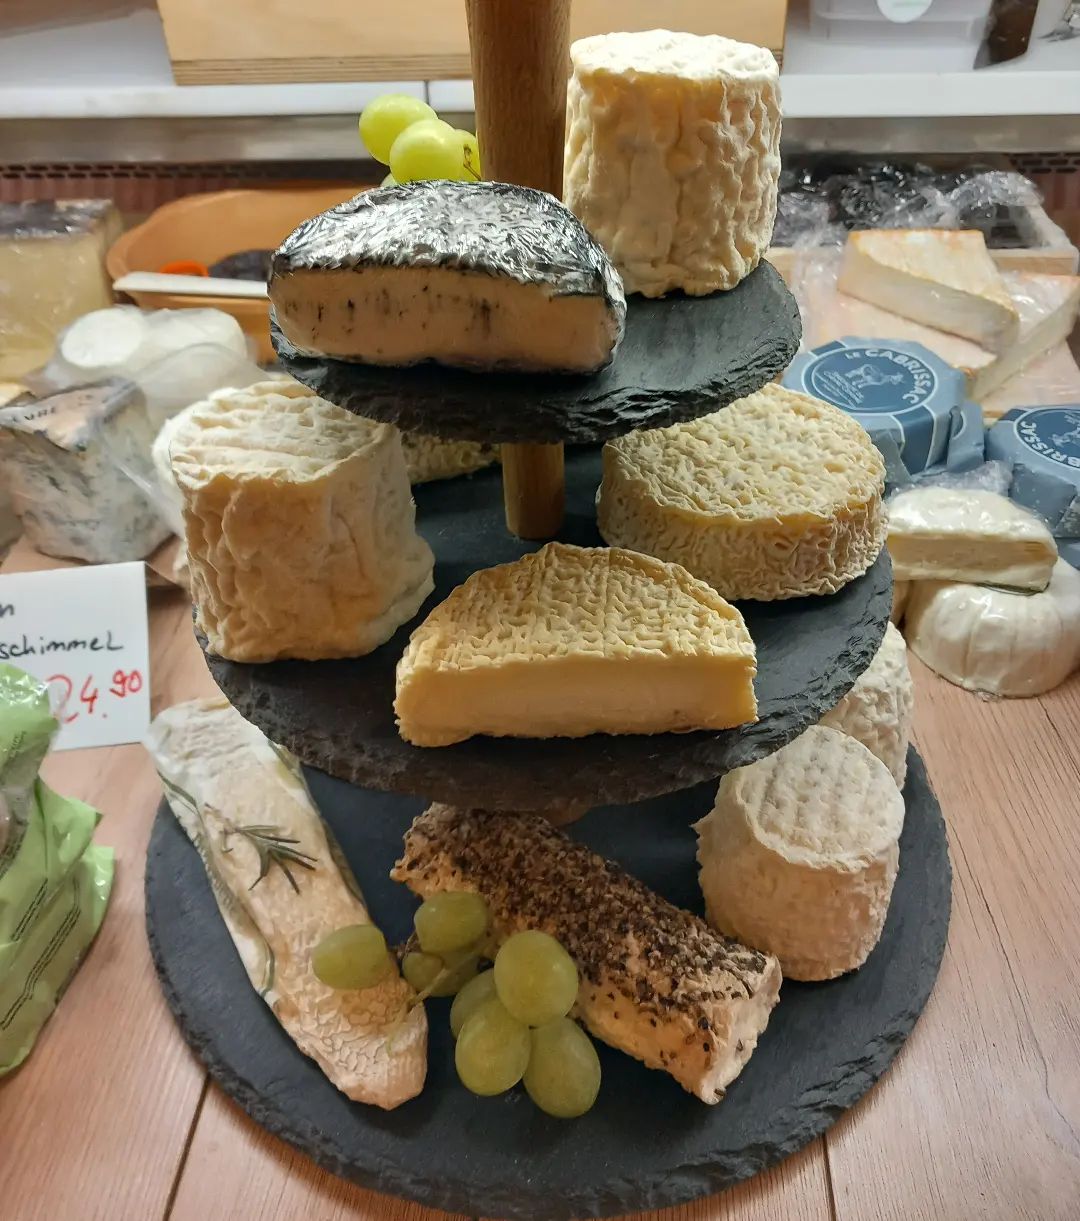 Ziegenkäse Türmchen 🐐🧀🍇 mit vielen Spezialitäten aus Frankreich 
#käse #käseladen #küchererskäseecke #käsetheke #käsemachtglücklich #käsemachtglücklich #käseecke #ziegenkäse #rohmilch #savoivivre #schmankerl #spezialitäten #heidelberg #tanteemmaladen #cheese #fromage #formaggio